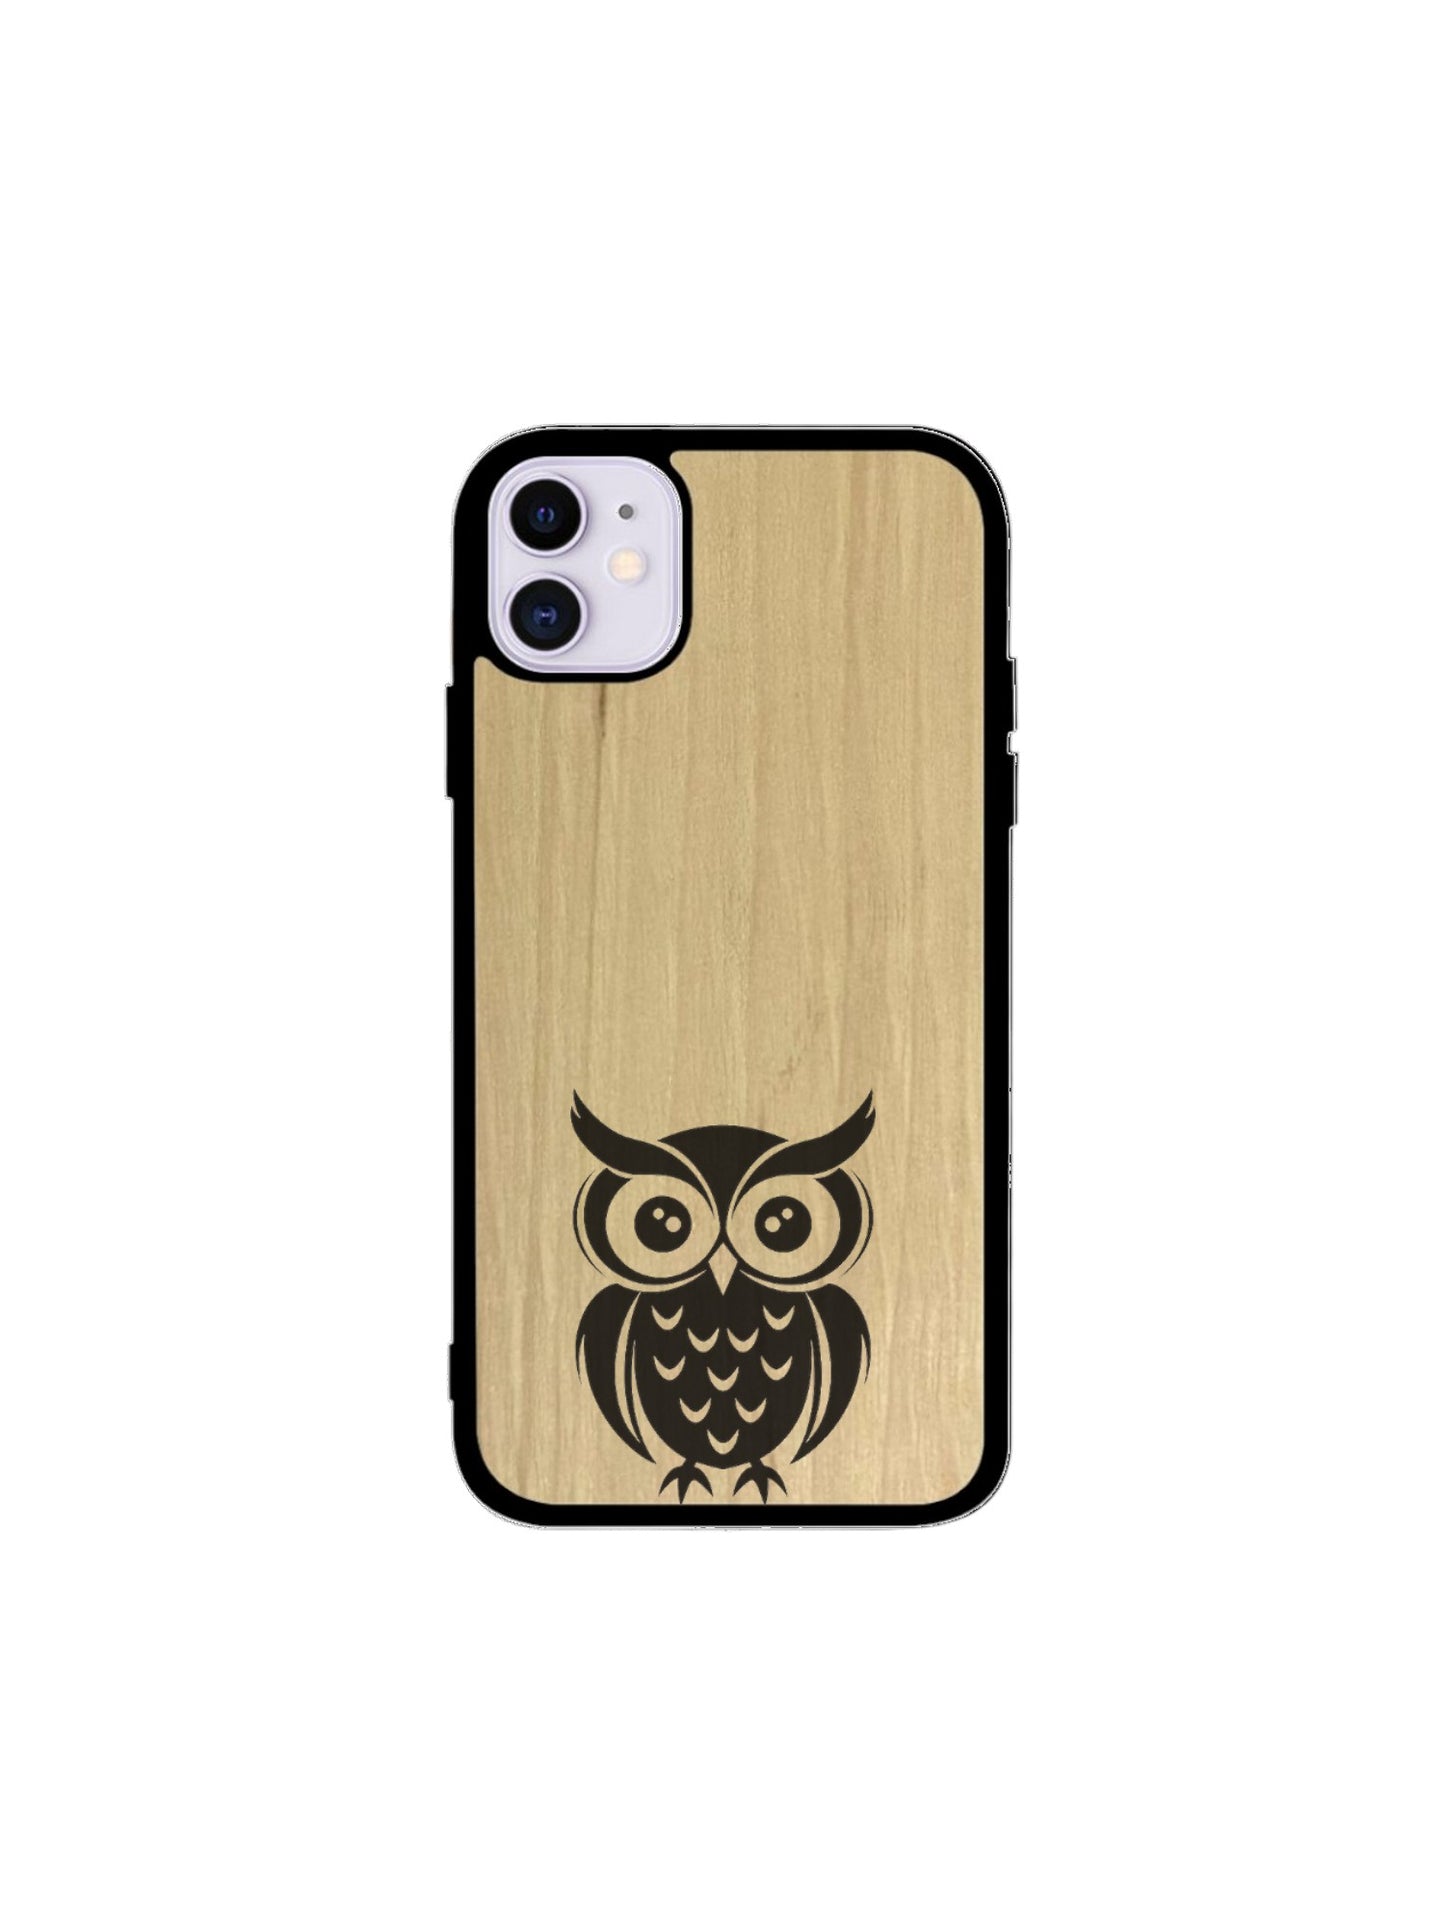 Iphone case - Owl